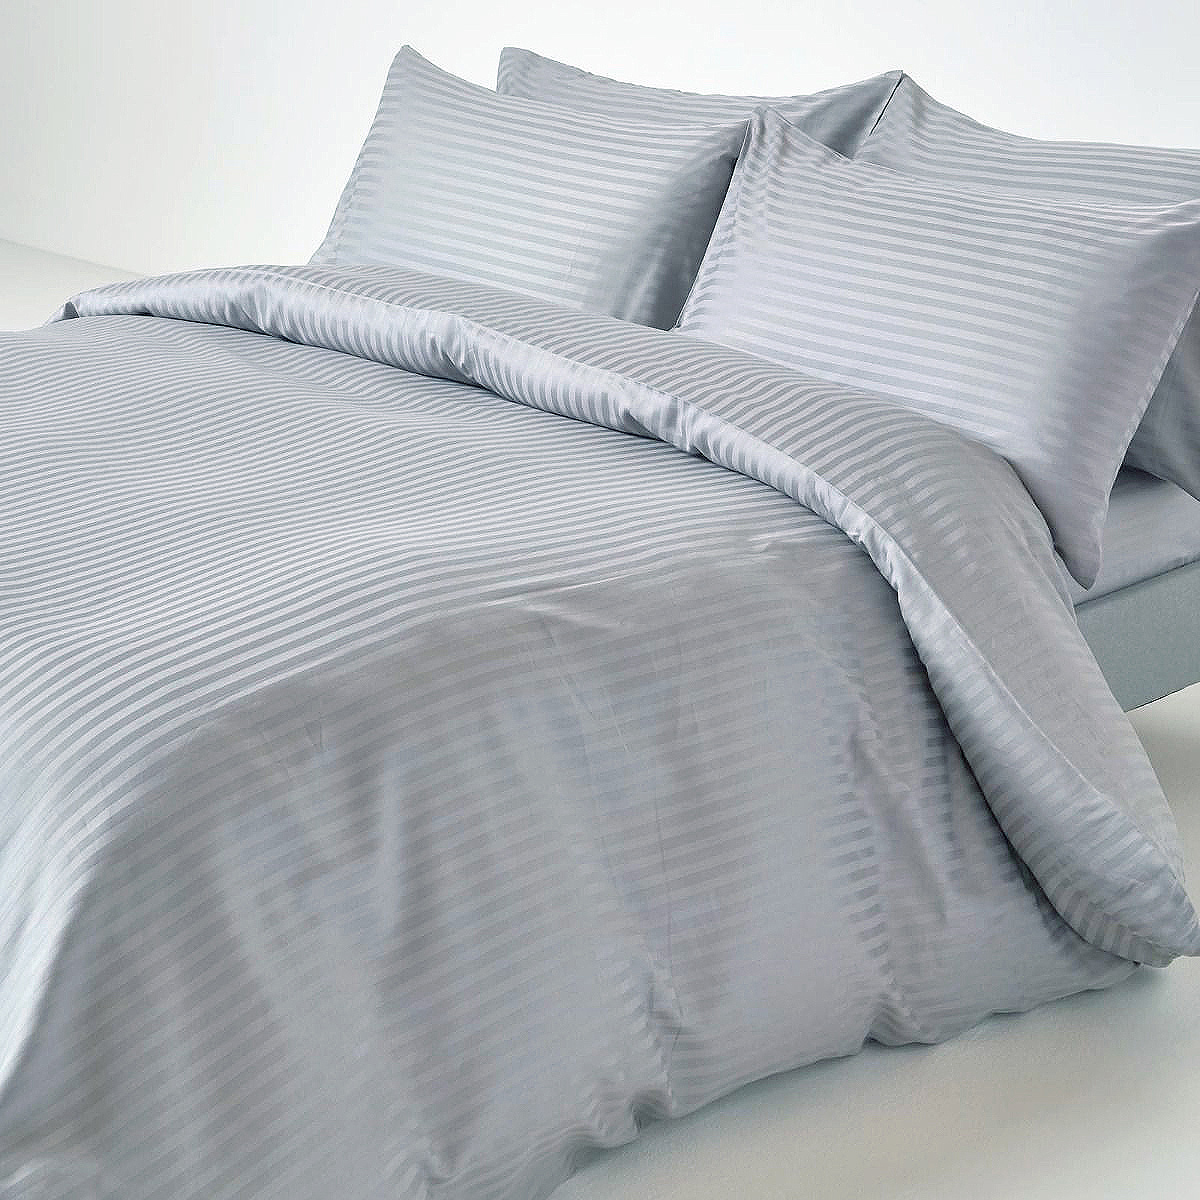 Серое постельное белье из страйп-сатина Madison - качественное постельноебелье, как в лучших отелях - купить в интернет-магазине Jolly Decor